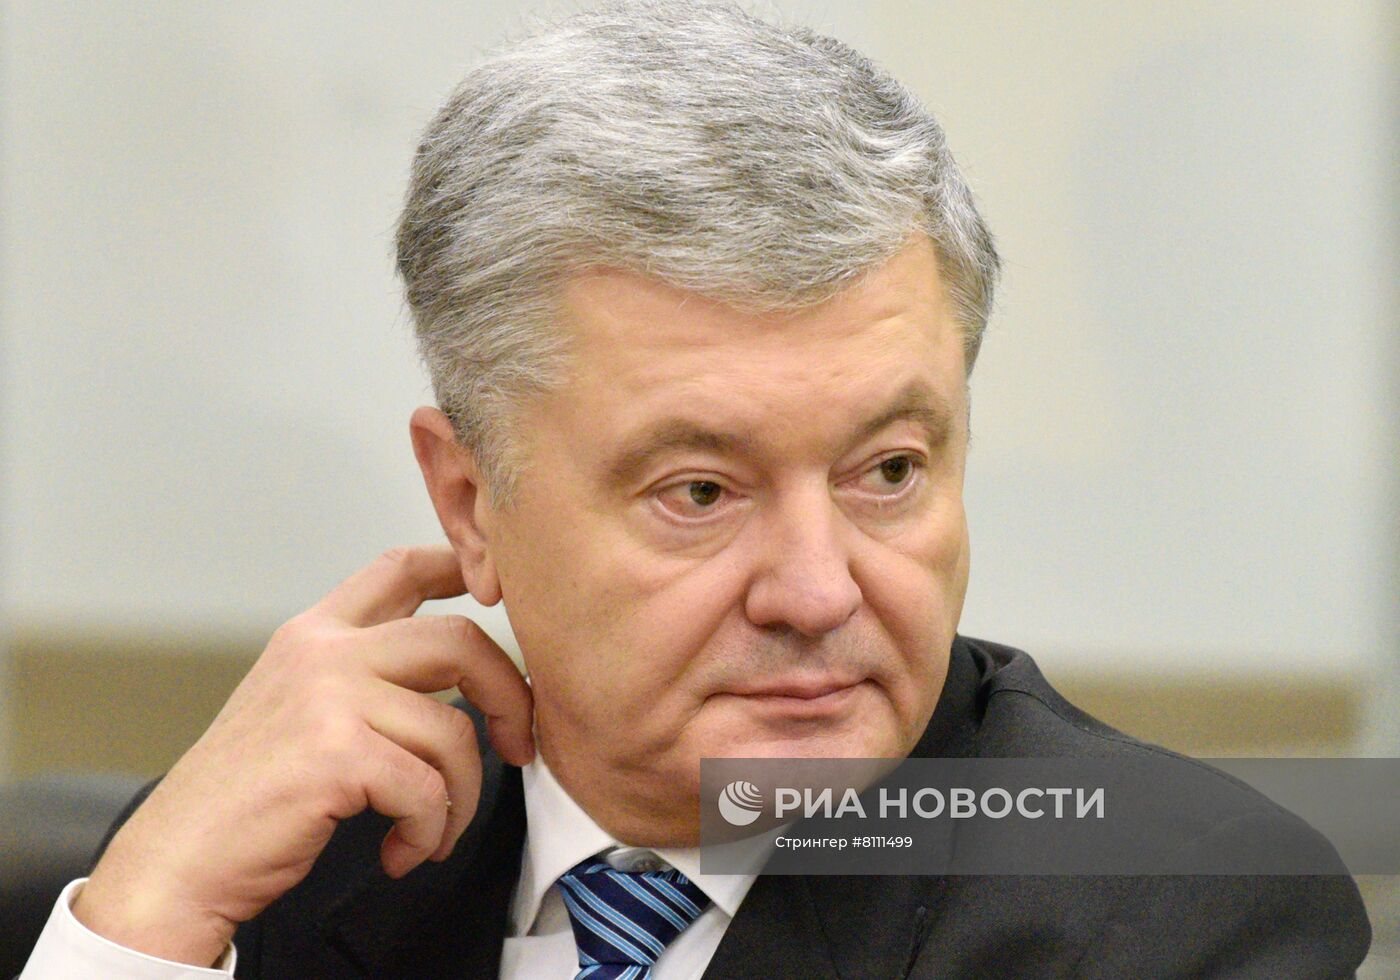 Рассмотрение апелляции на меру пресечения экс-президенту Украины П. Порошенко 